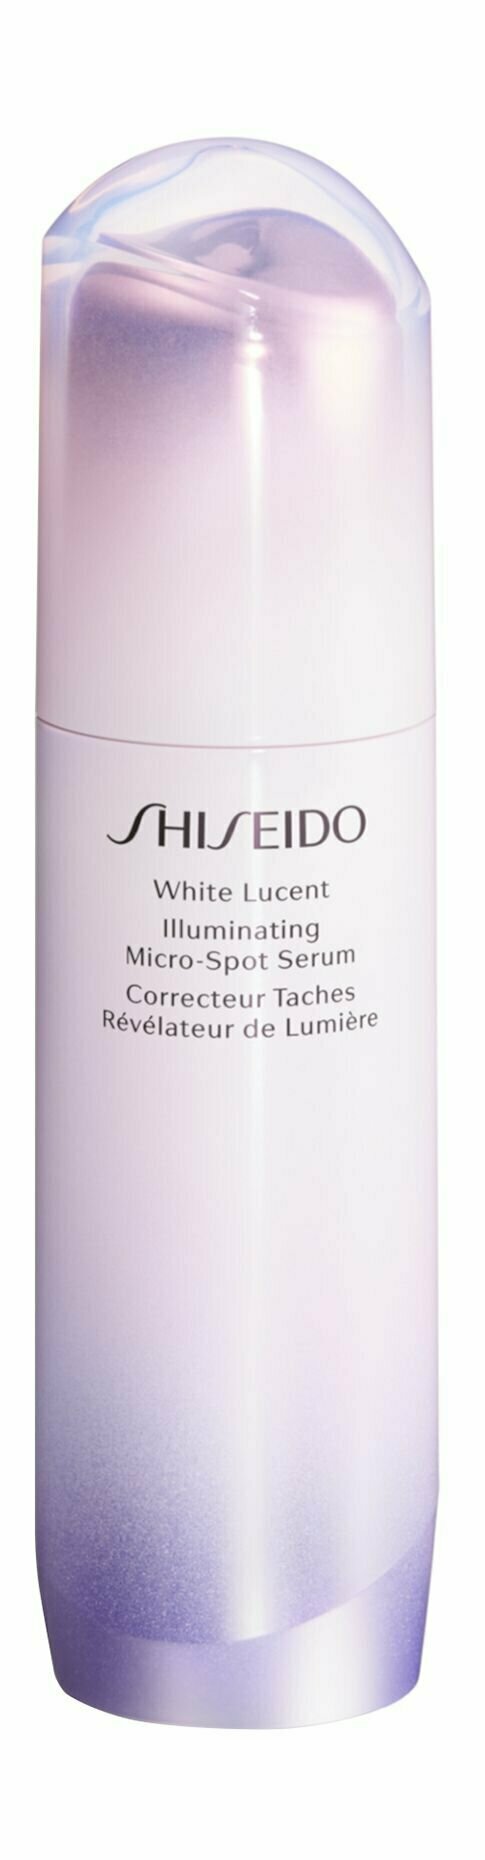 Осветляющая сыворотка для лица против пигментных пятен 50 мл Shiseido White Lucent Illuminating Micro-Spot Serum